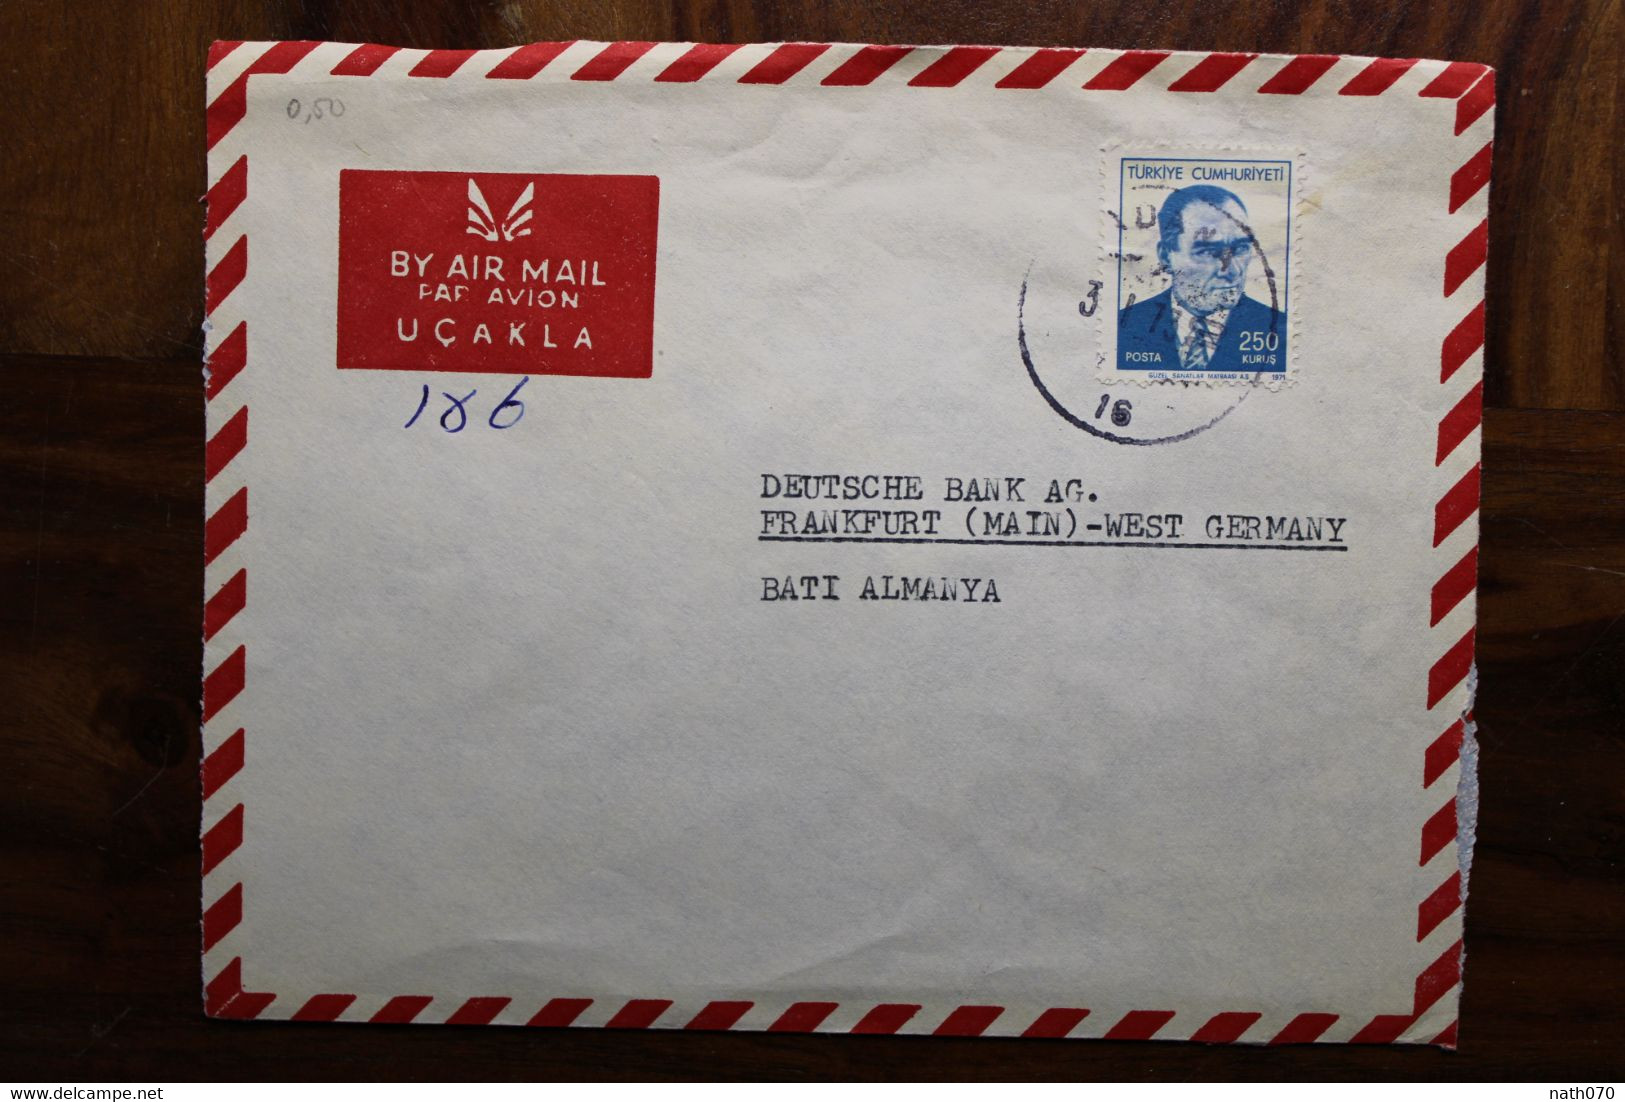 1973 Turquie Türkei Air Mail Cover Enveloppe Par Avion Allemagne Seul Solo - Covers & Documents